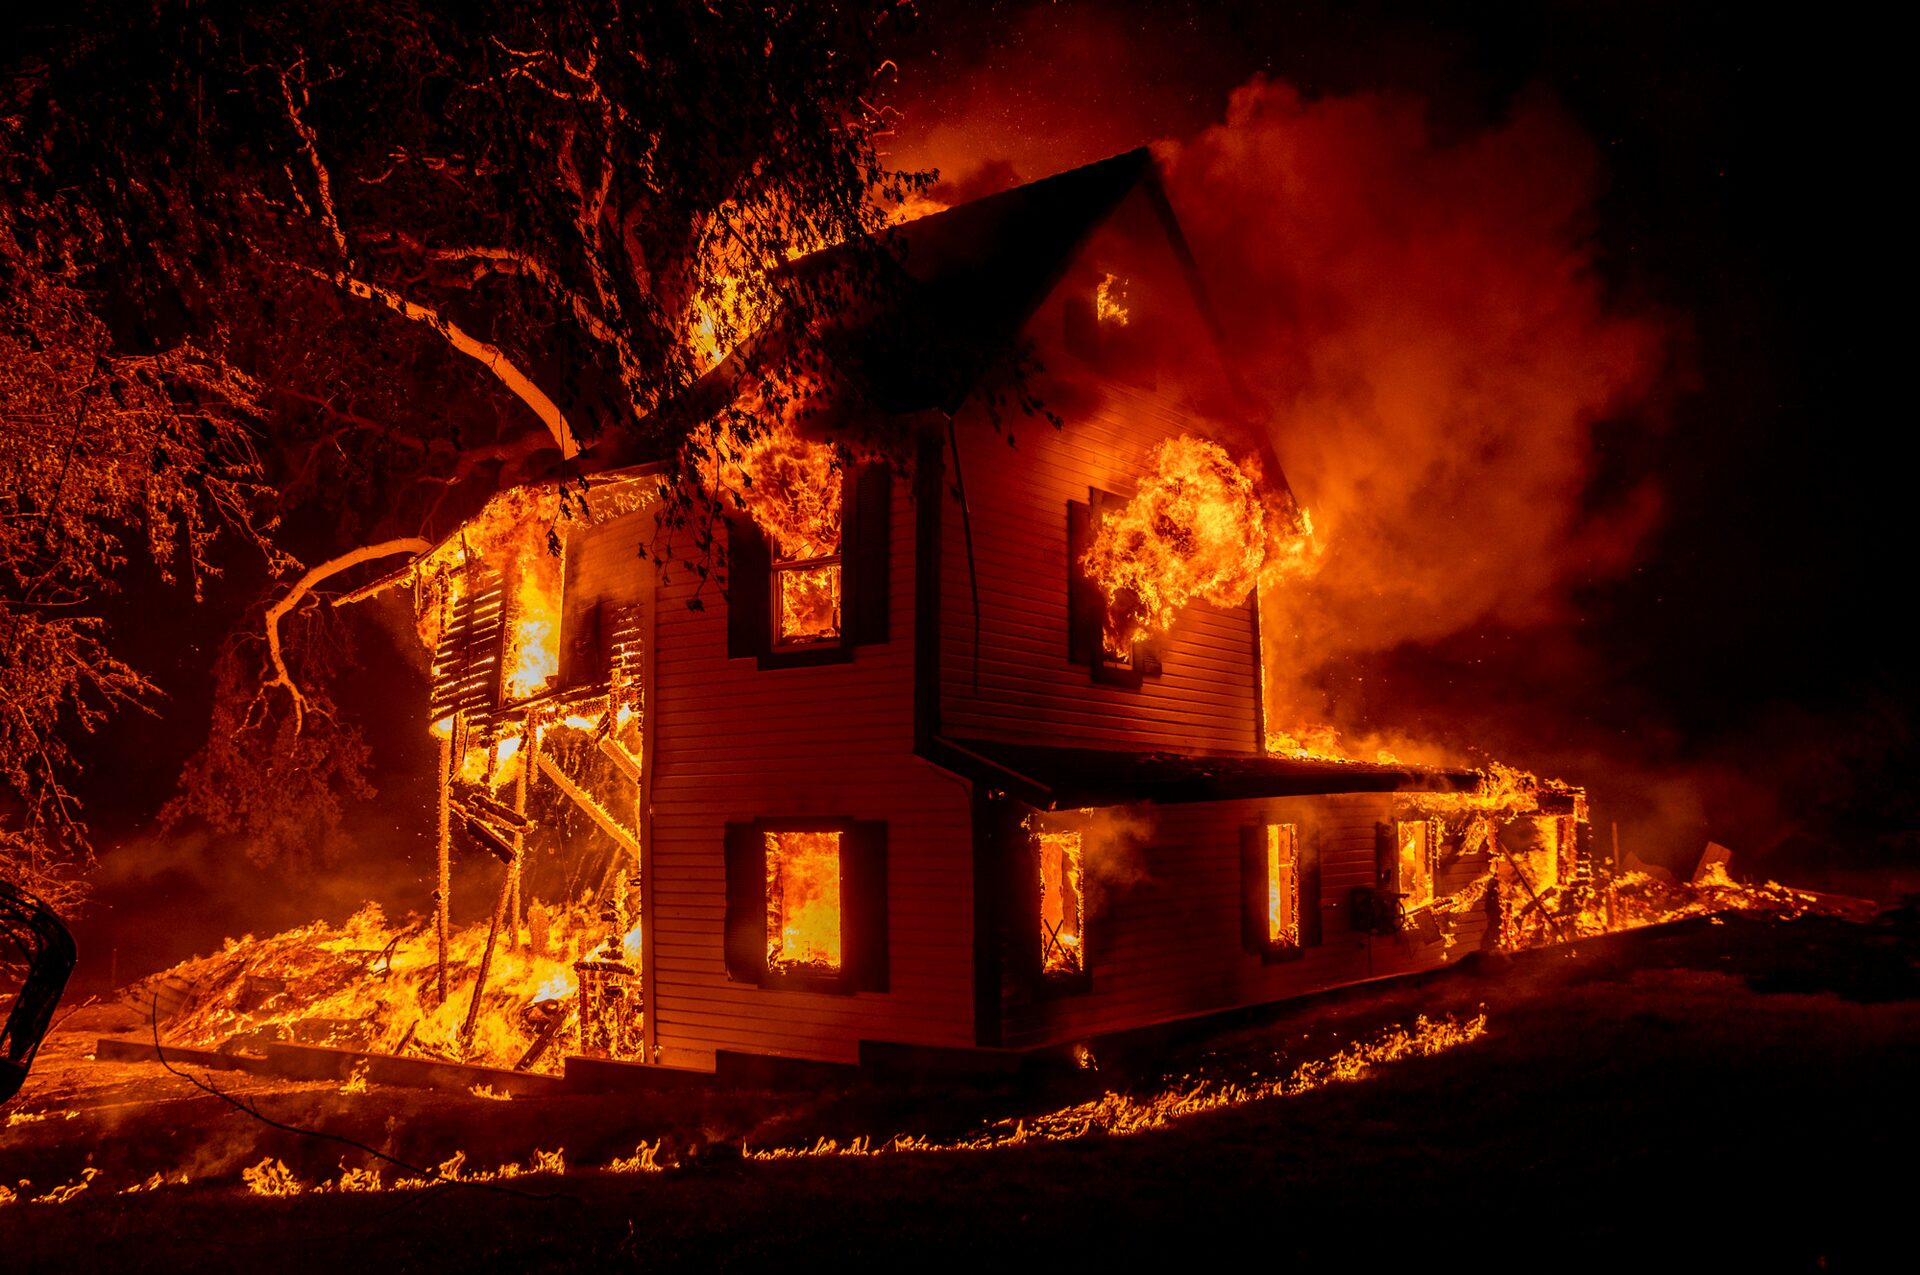 Una casa arde en Jeters Road cerca de la autopista 395 al sur de Janesville, California